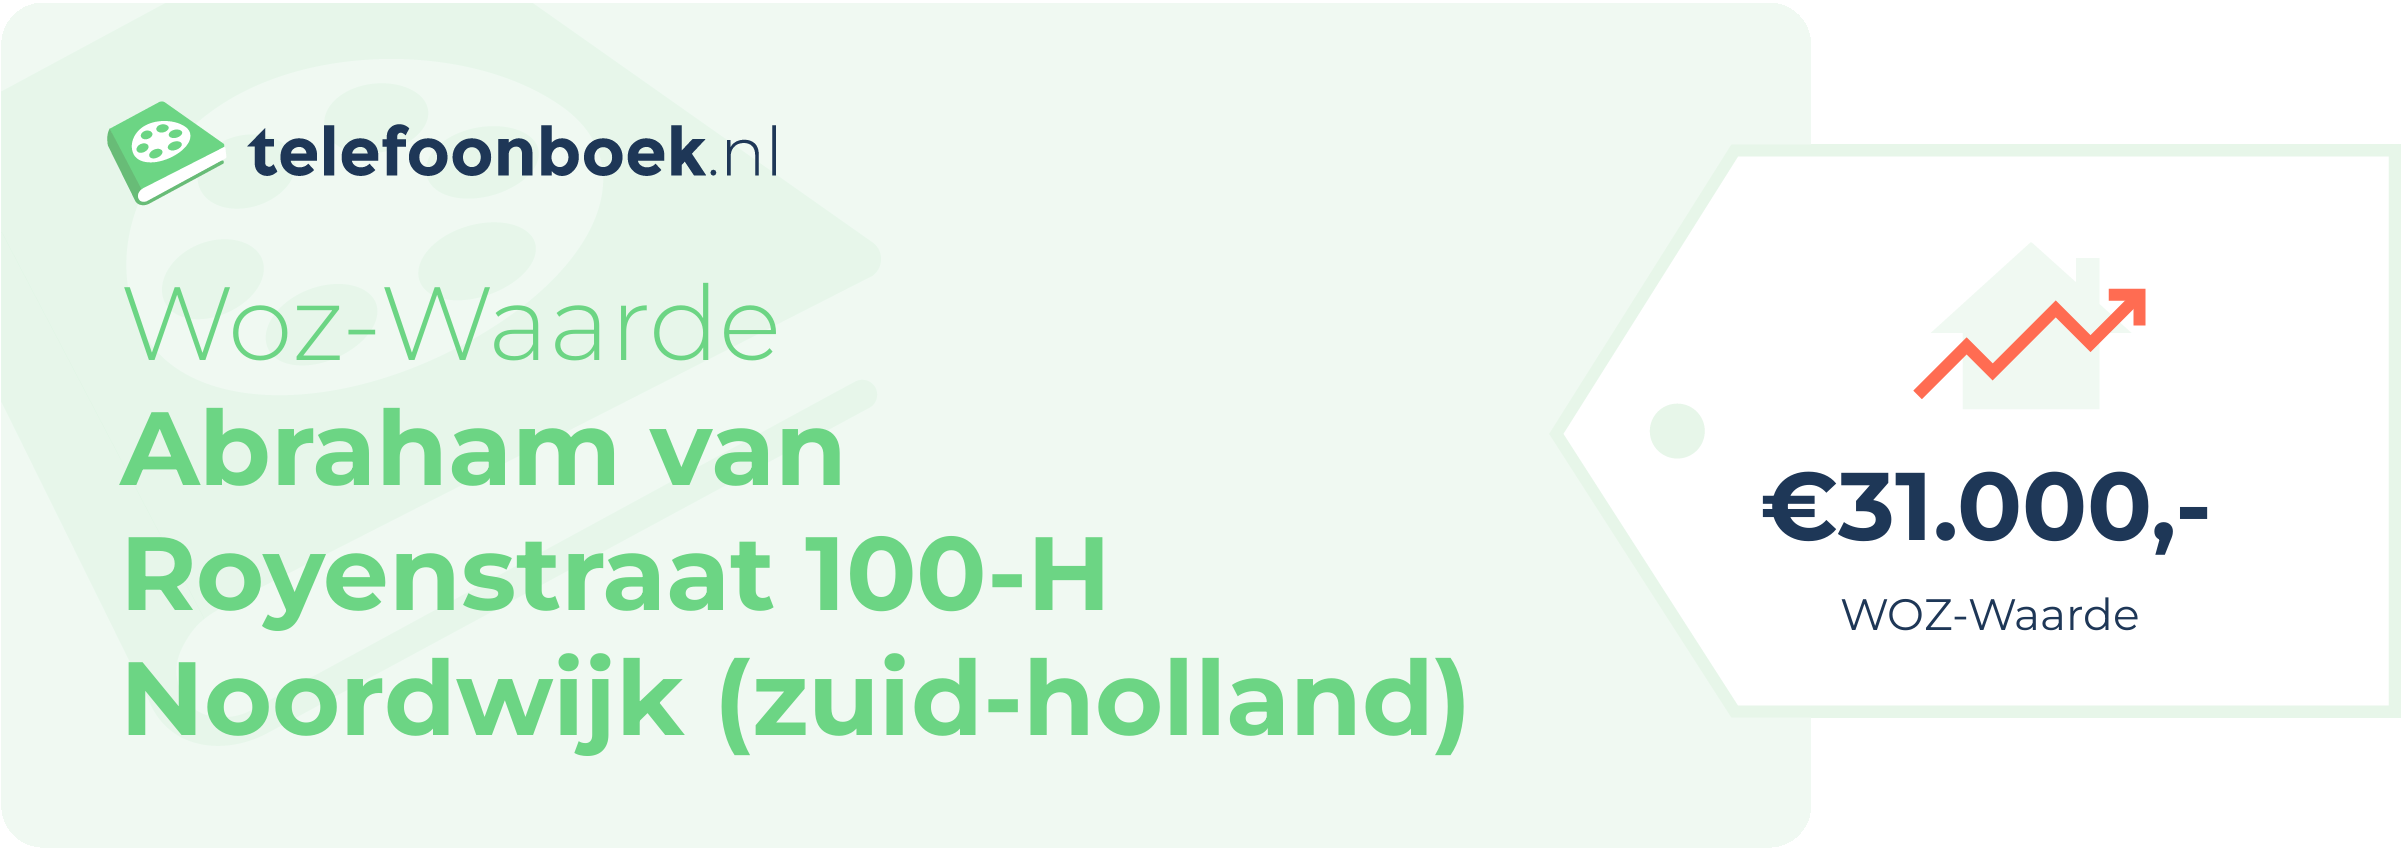 WOZ-waarde Abraham Van Royenstraat 100-H Noordwijk (Zuid-Holland)